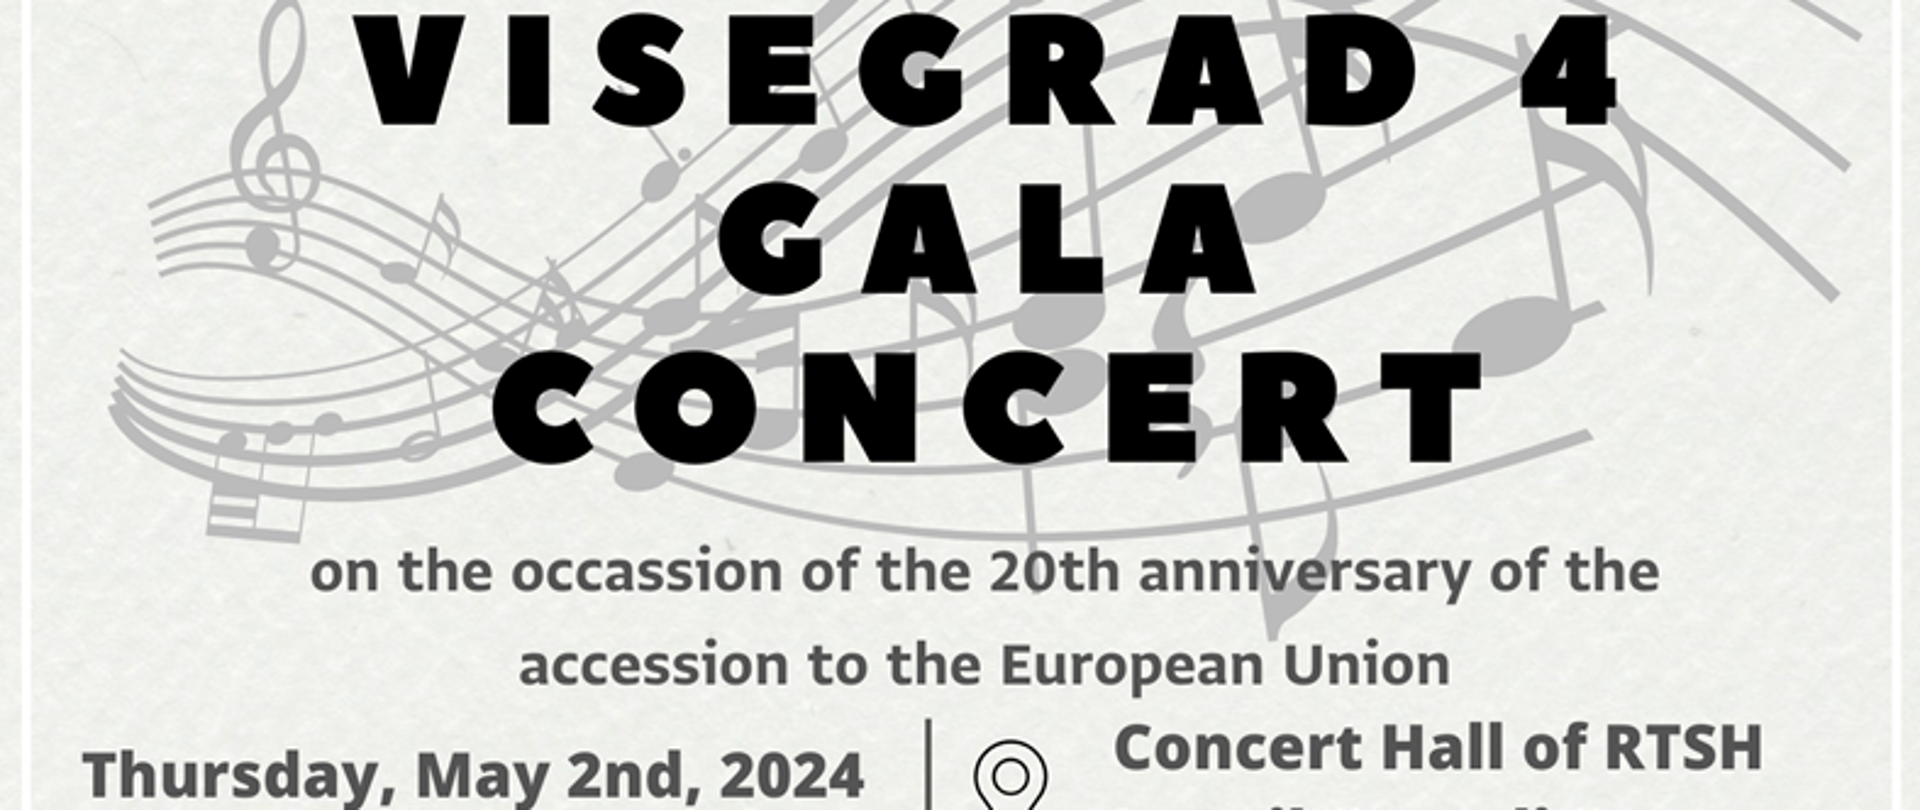 Visegrad 4 Gala Concert